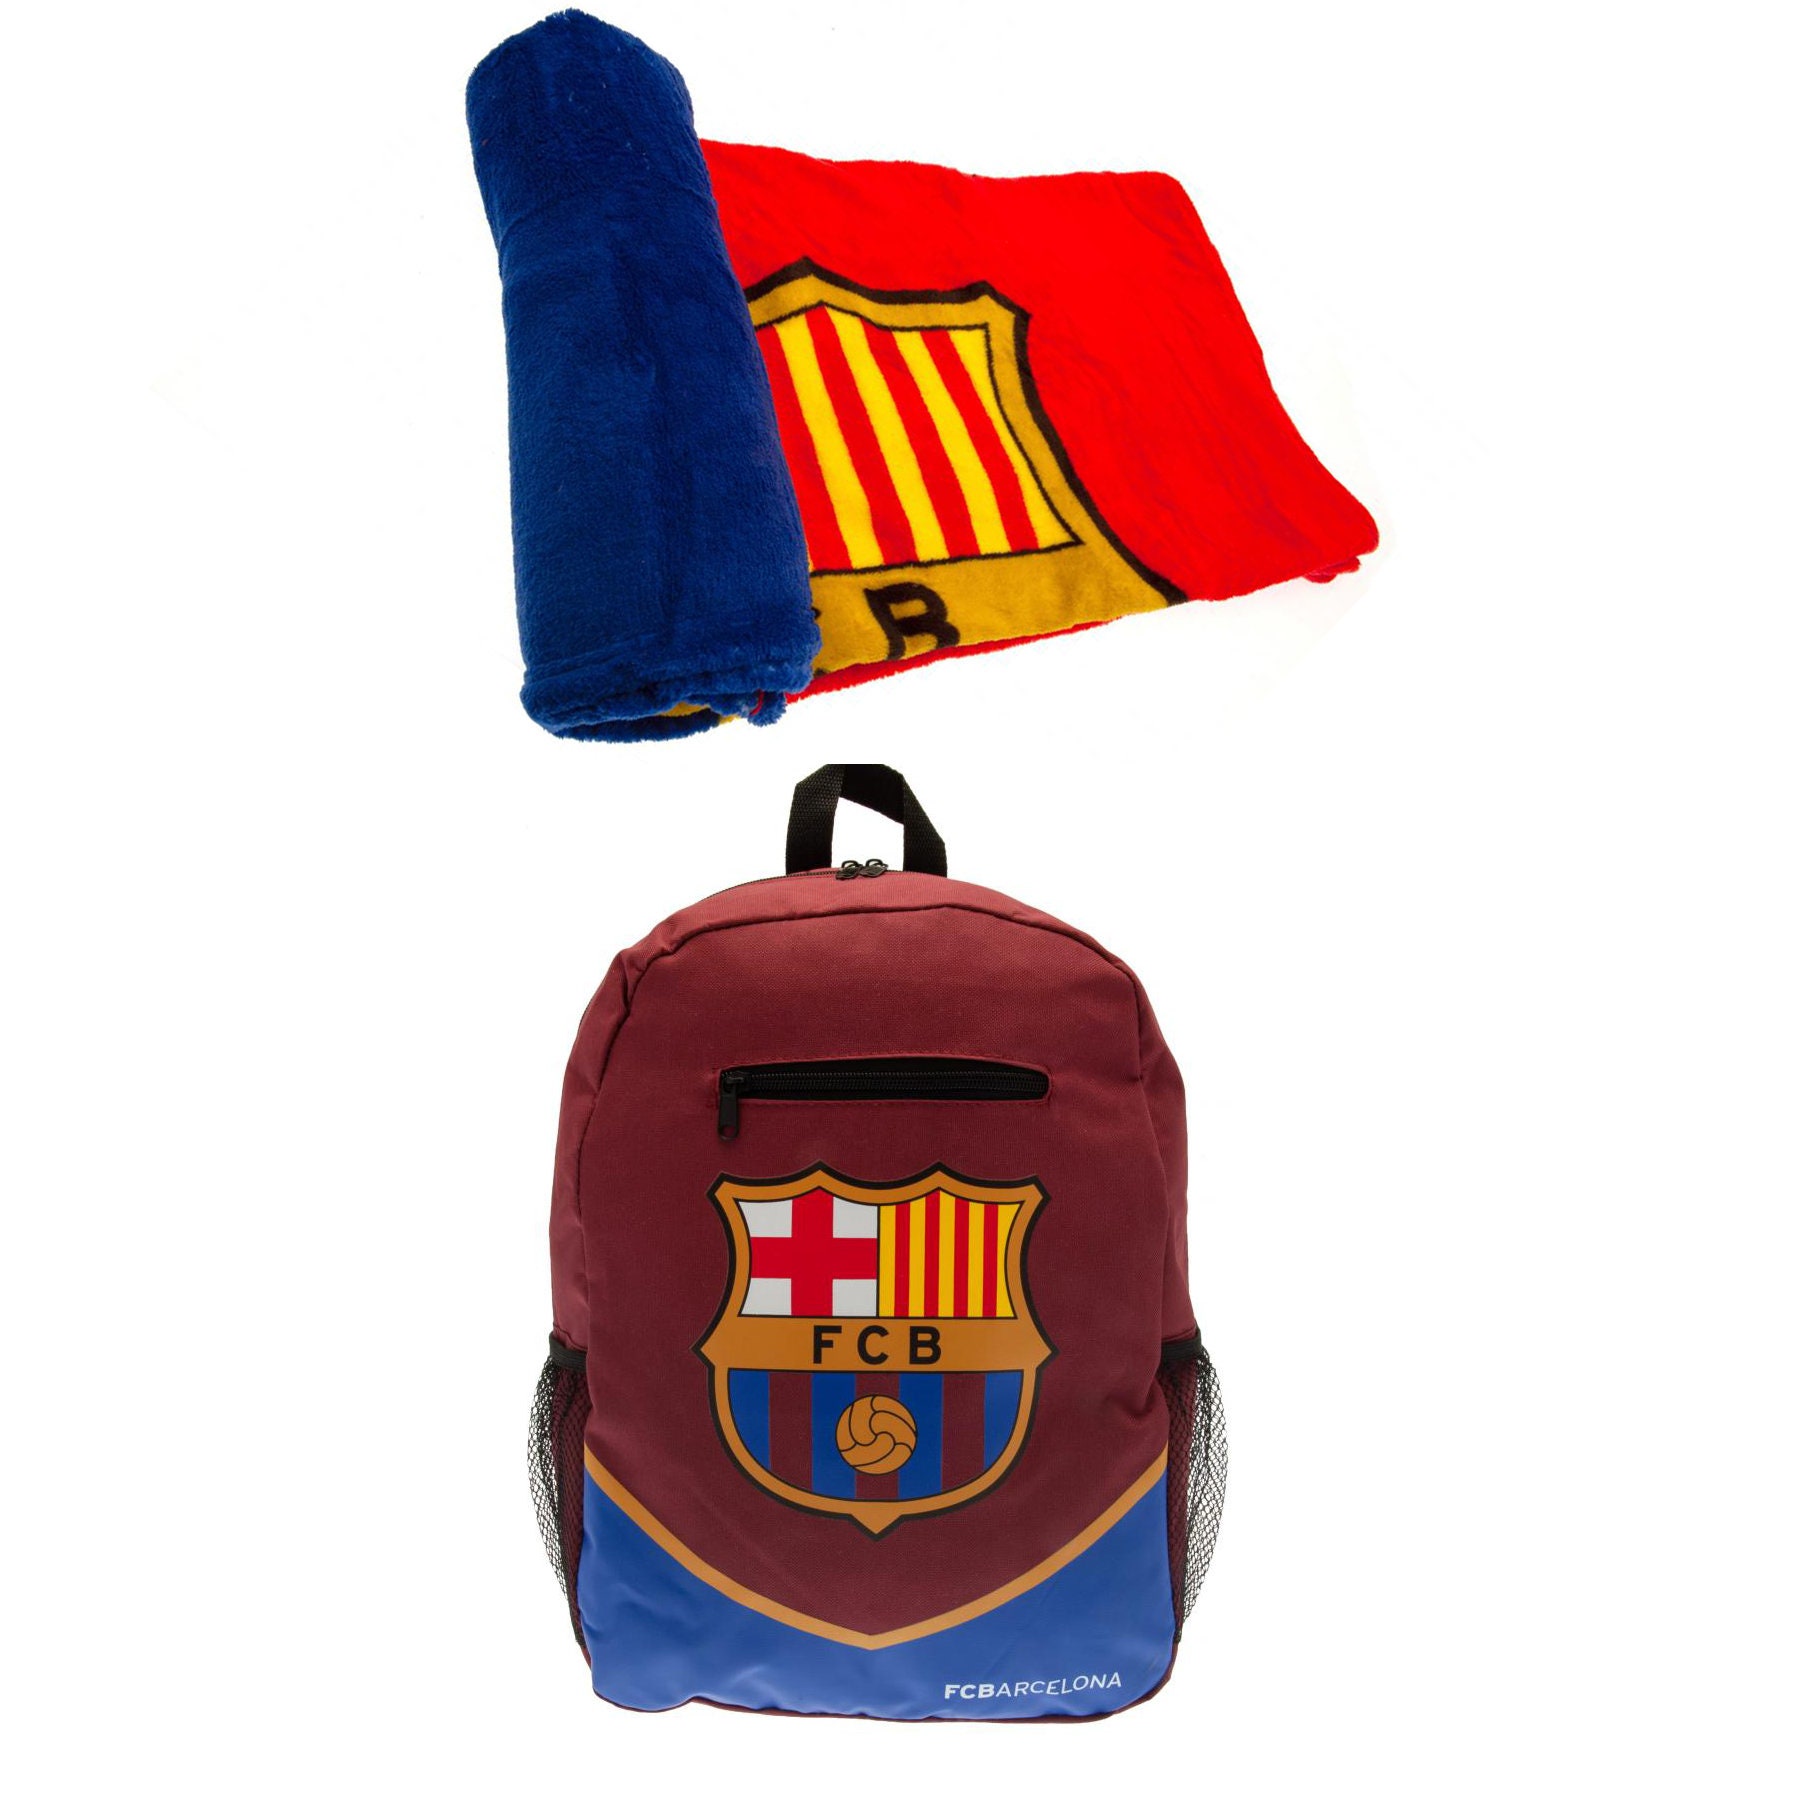 bekennen Makkelijker maken twee FC Barcelona Fan Gifts Official Licensed Barcelona Products - Etsy